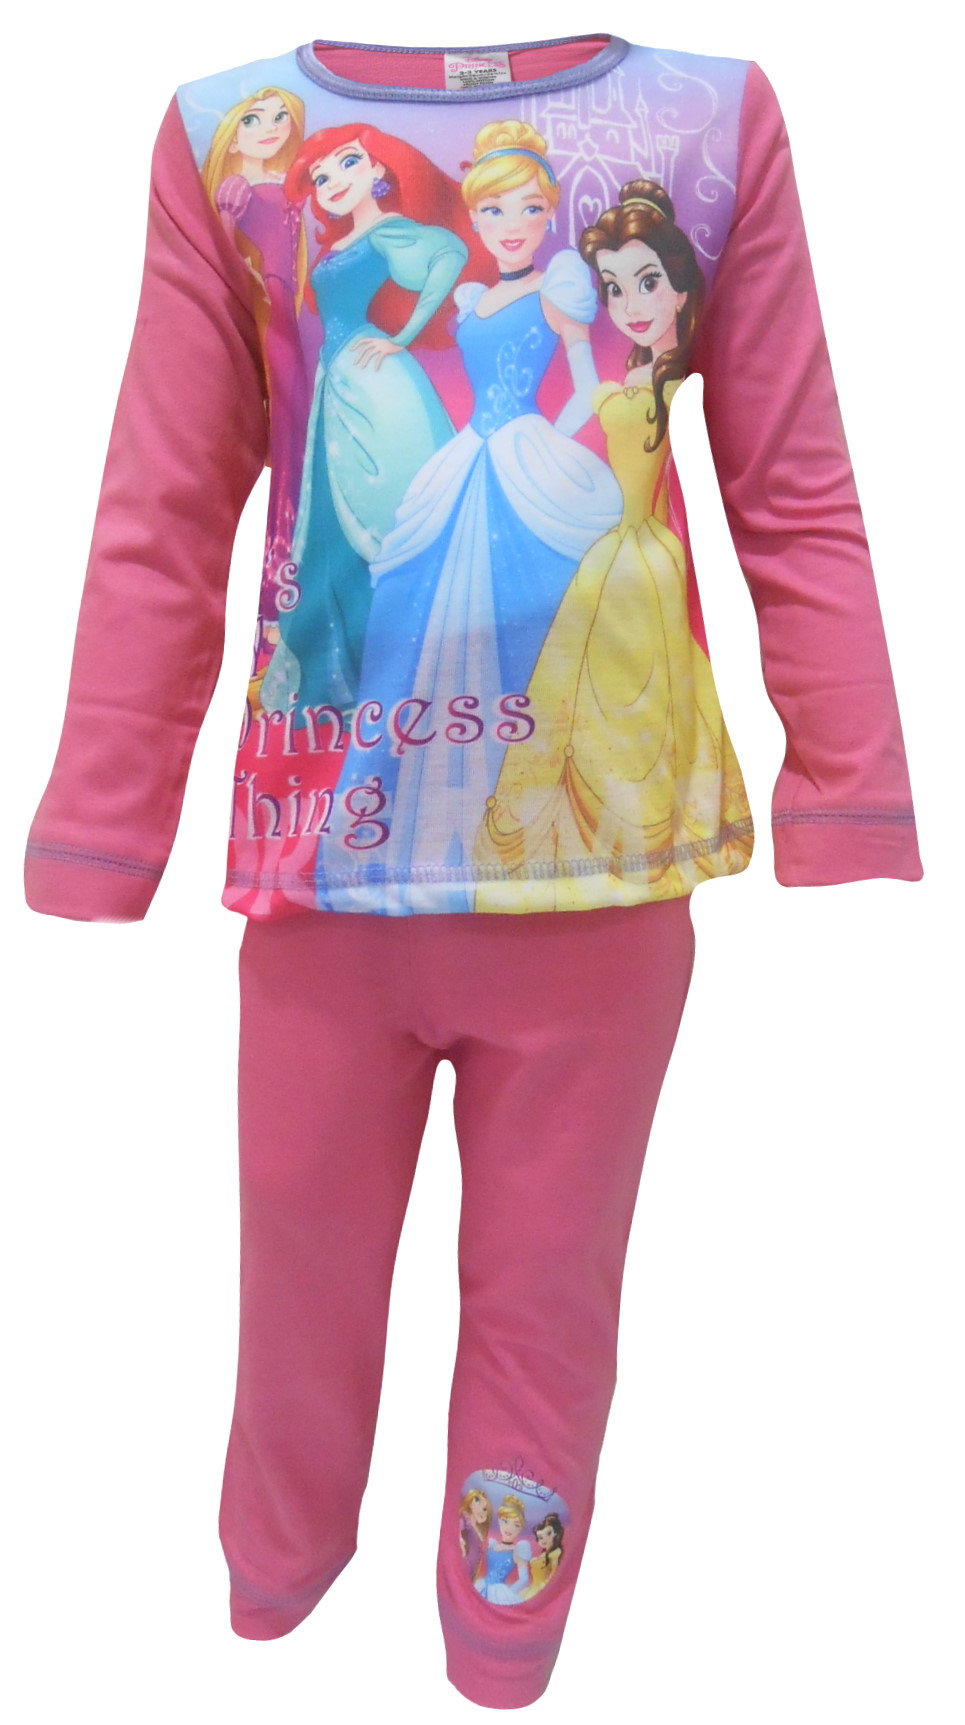 Disney princess Pyjamas PG254 (1).JPG  by Thingimijigs